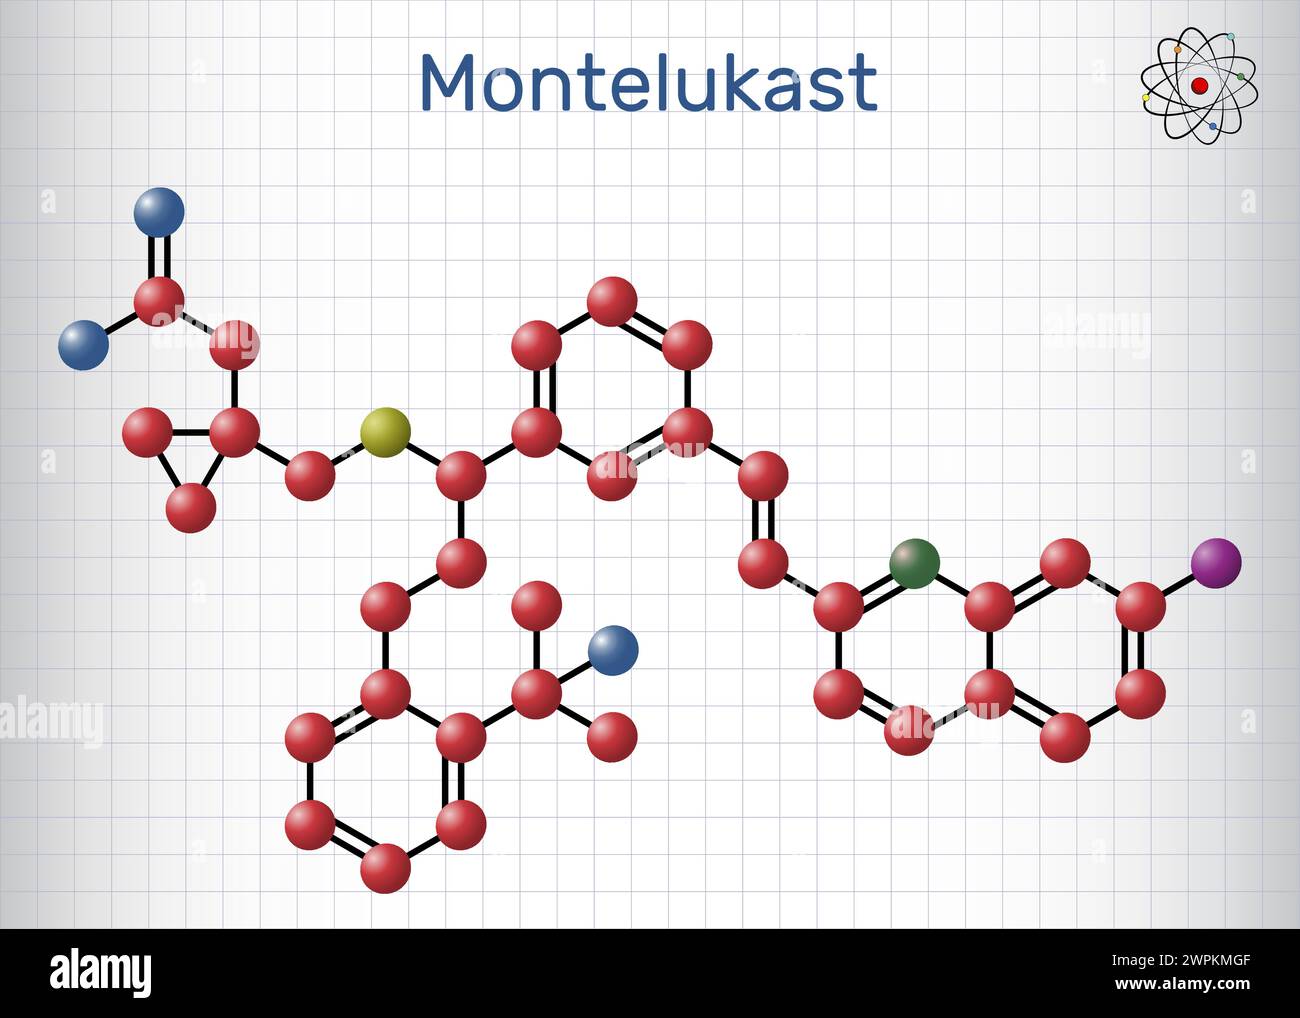 Montelukast-Arzneimittelmolekül. Es wird zur Behandlung von Asthma angewendet. Molekülmodell. Blatt Papier in einem Käfig. Vektorabbildung Stock Vektor